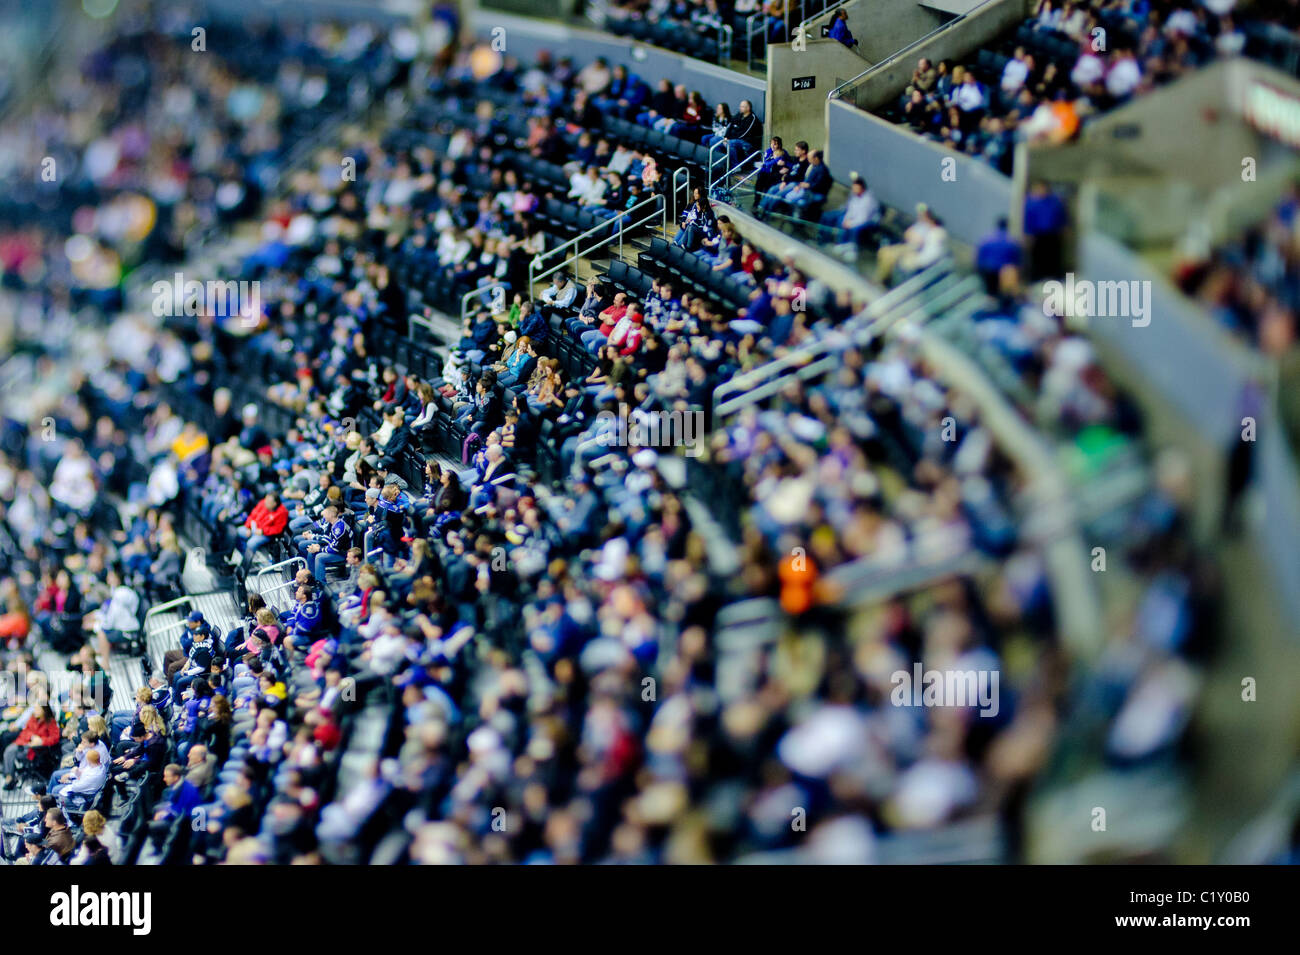 La folla a guardare una partita di hockey su ghiaccio utilizzando la miniaturizzazione tecnica fotografica Foto Stock